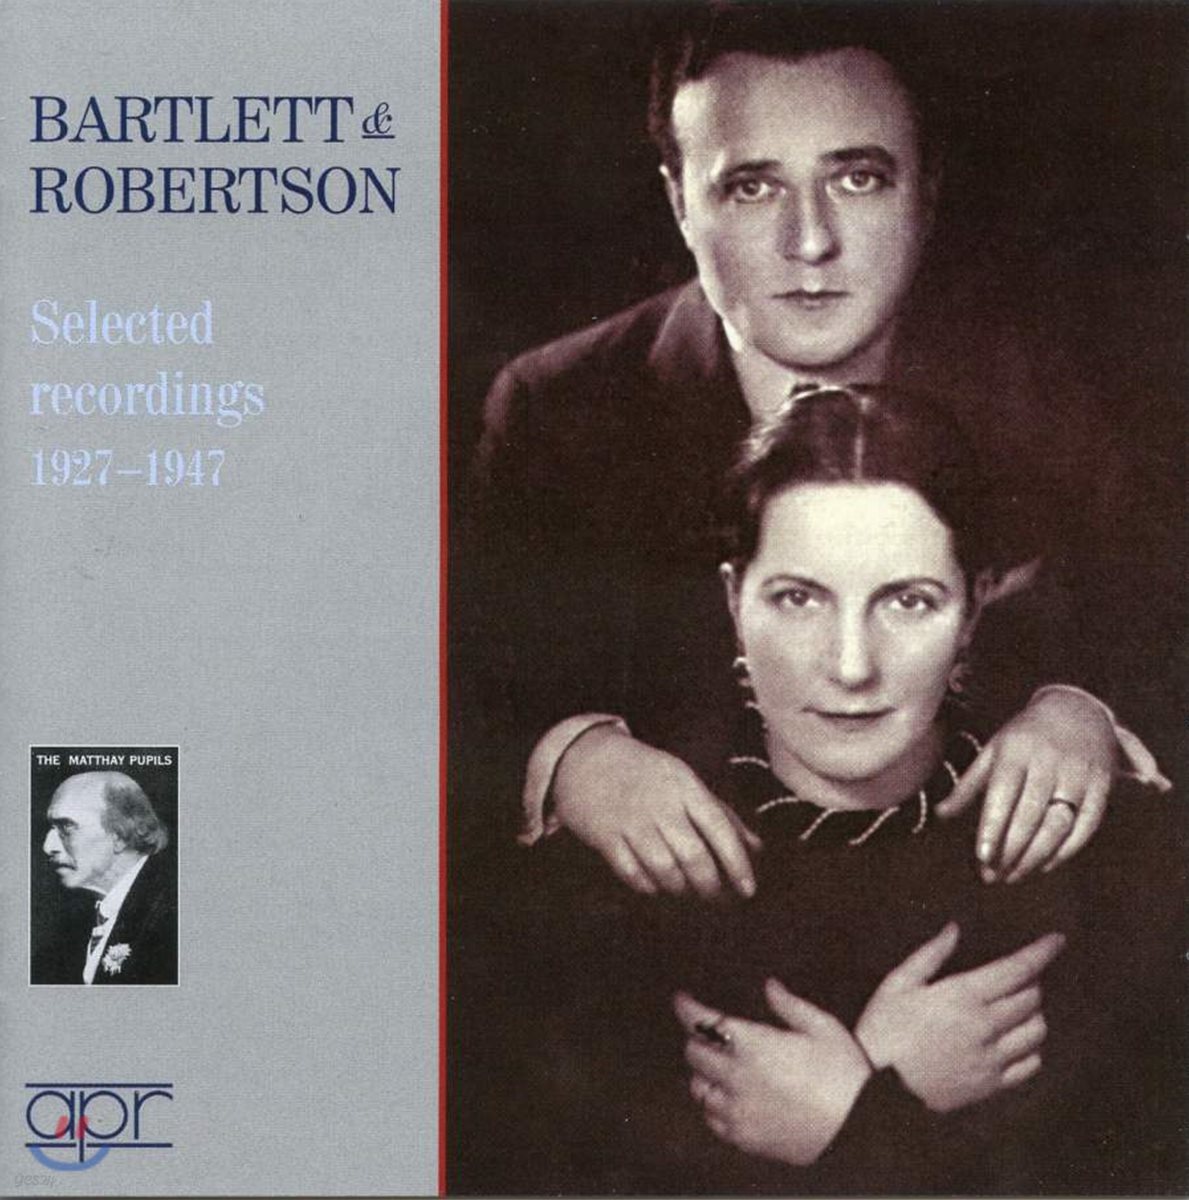 바틀렛 & 로버트슨 피아노 듀오 1927-1947 (Bartlett & Robertson Selected recordings 1927-1947)